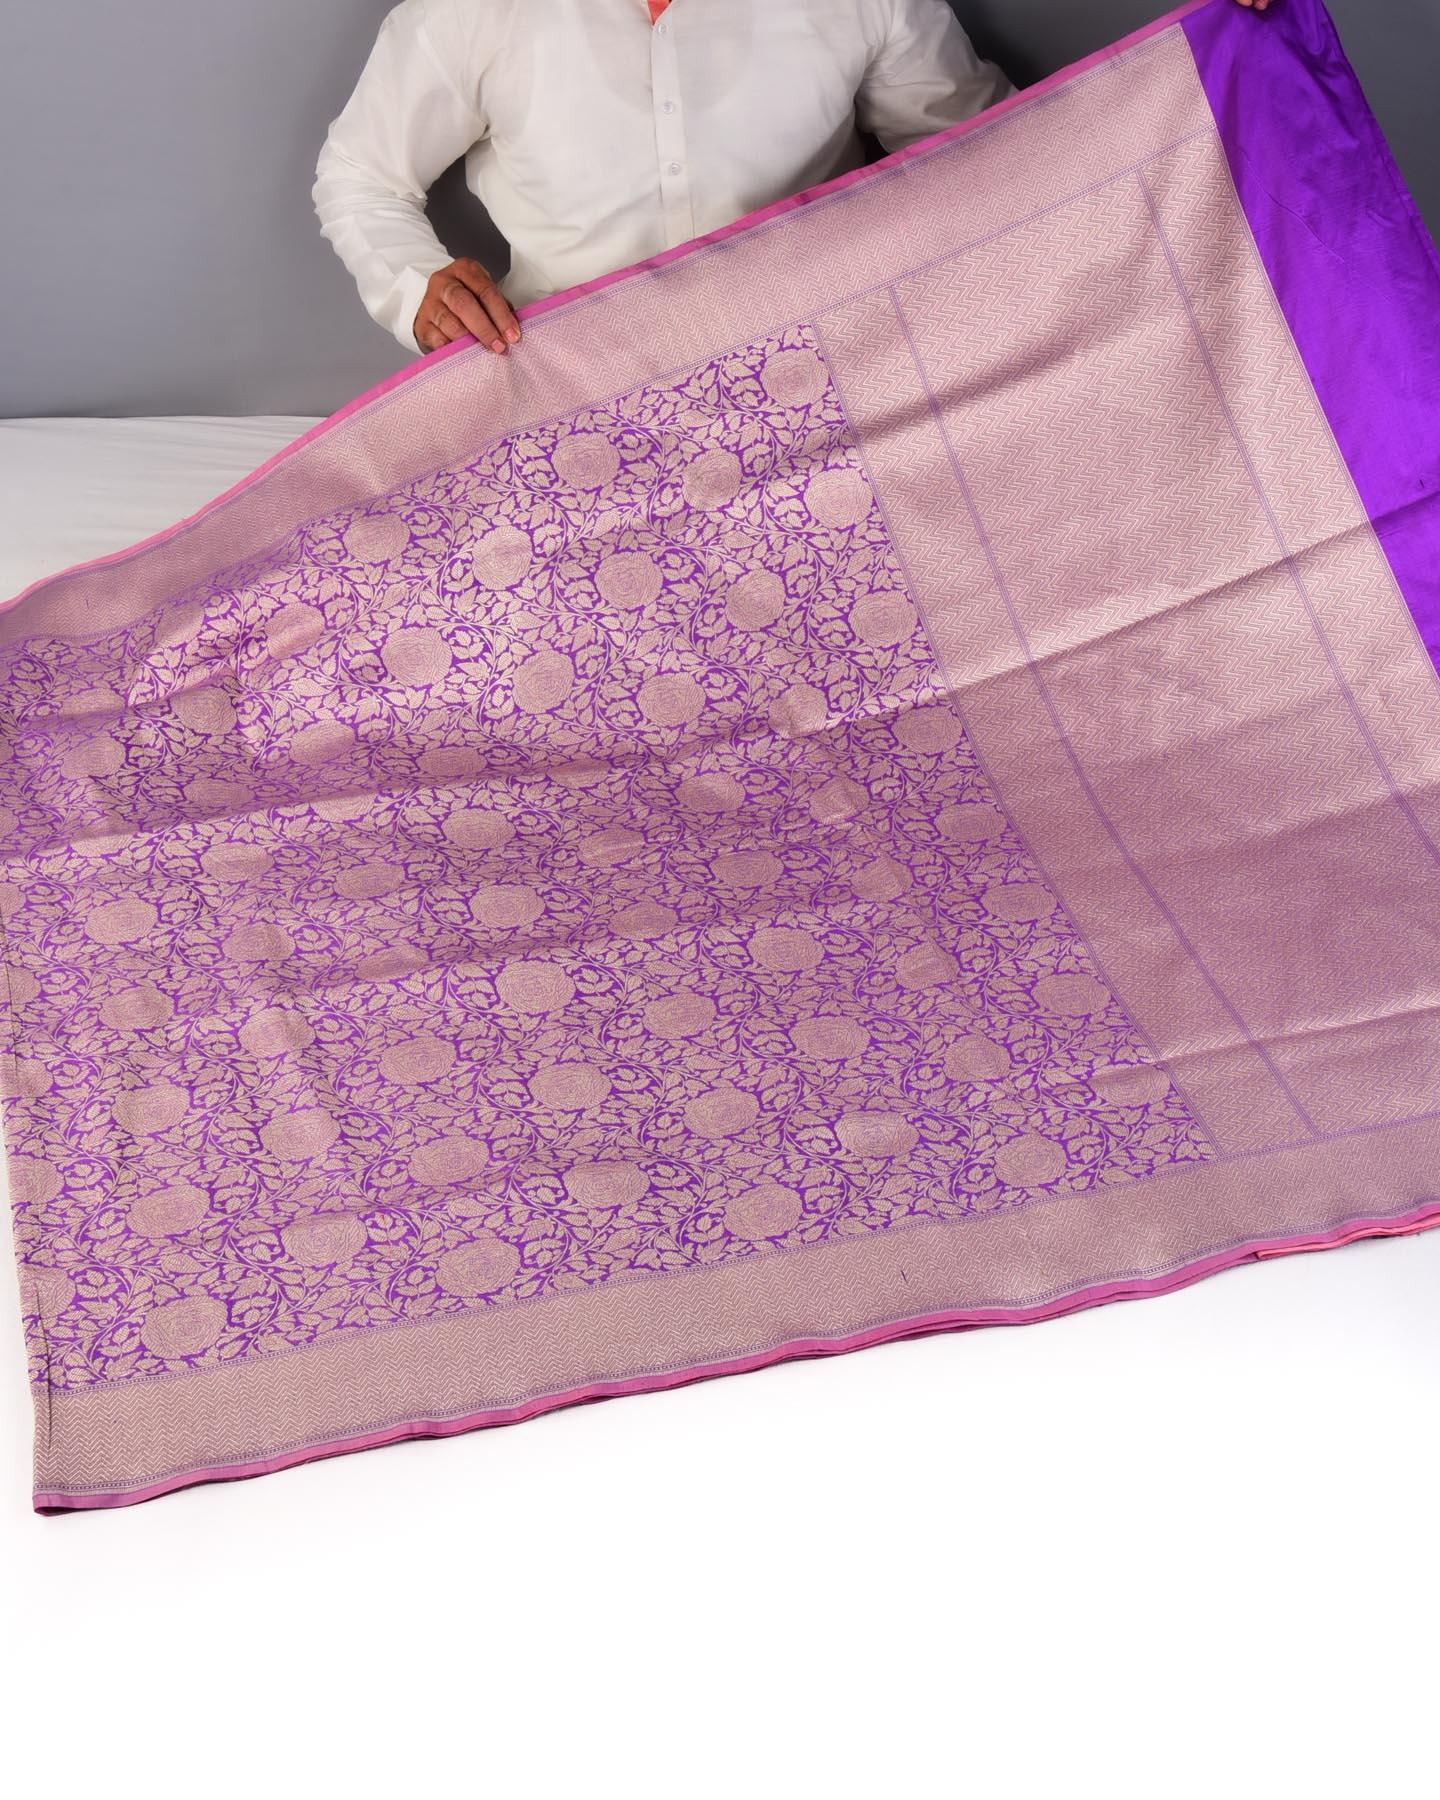 Lilac Banarasi Gulab Jaal Brocade Handwoven Katan Silk Saree with Contrast Pink Blouse - By HolyWeaves, Benares